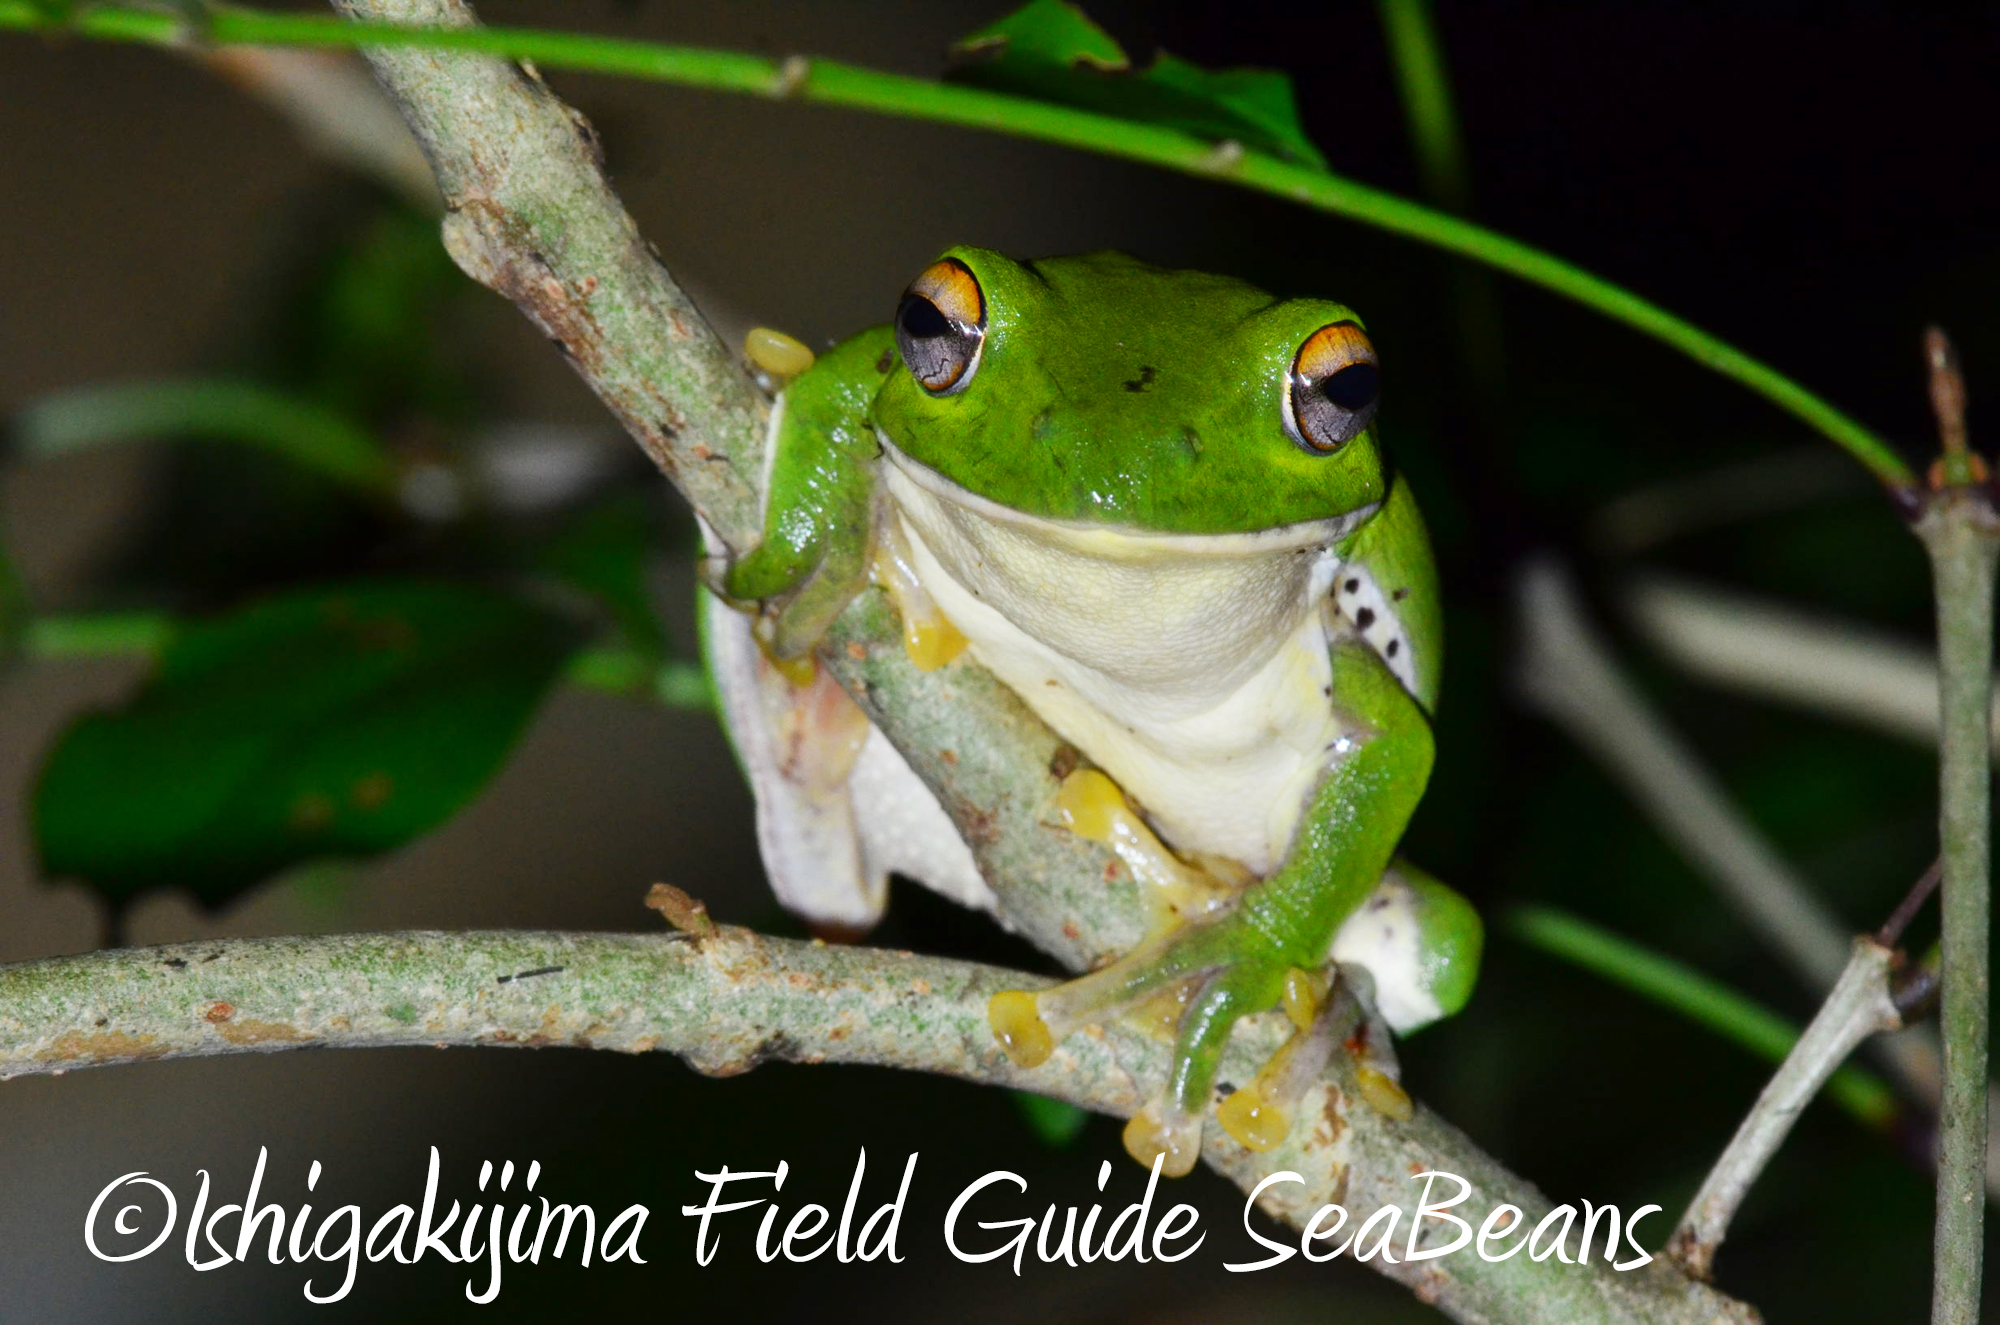 石垣島のカエル  Ishigaki Island Frog.